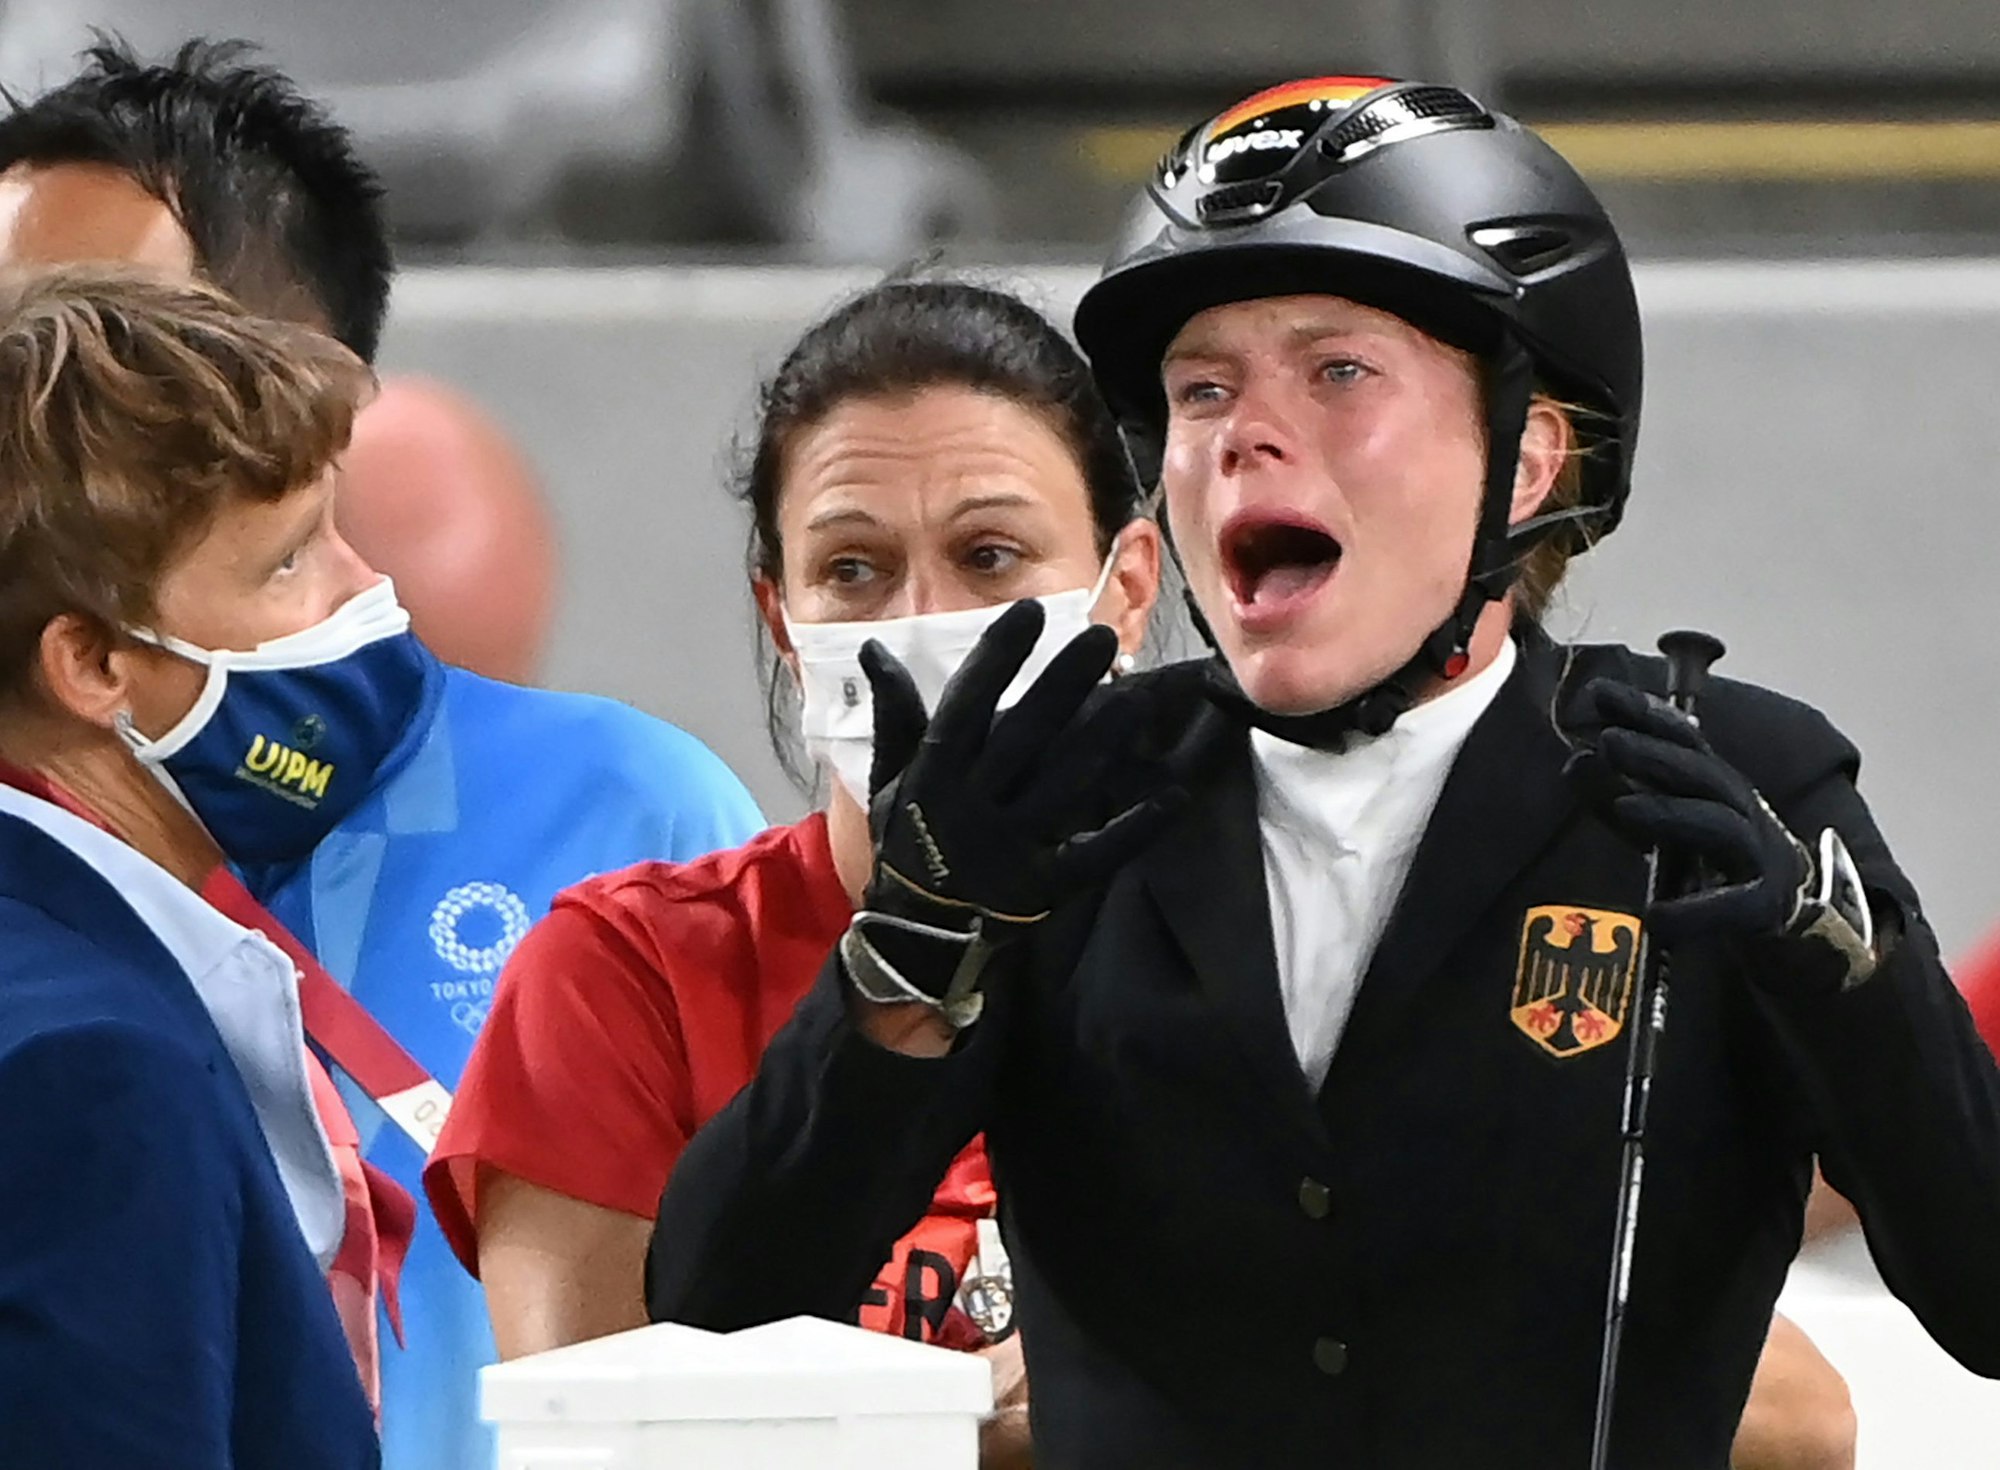 Springreiten im Tokio Stadium: Annika Schleu (r) aus Deutschland weinter, weil ihr Pferd nicht springen wollte, hinter ihr stand Bundestrainerin Kim Raisner.